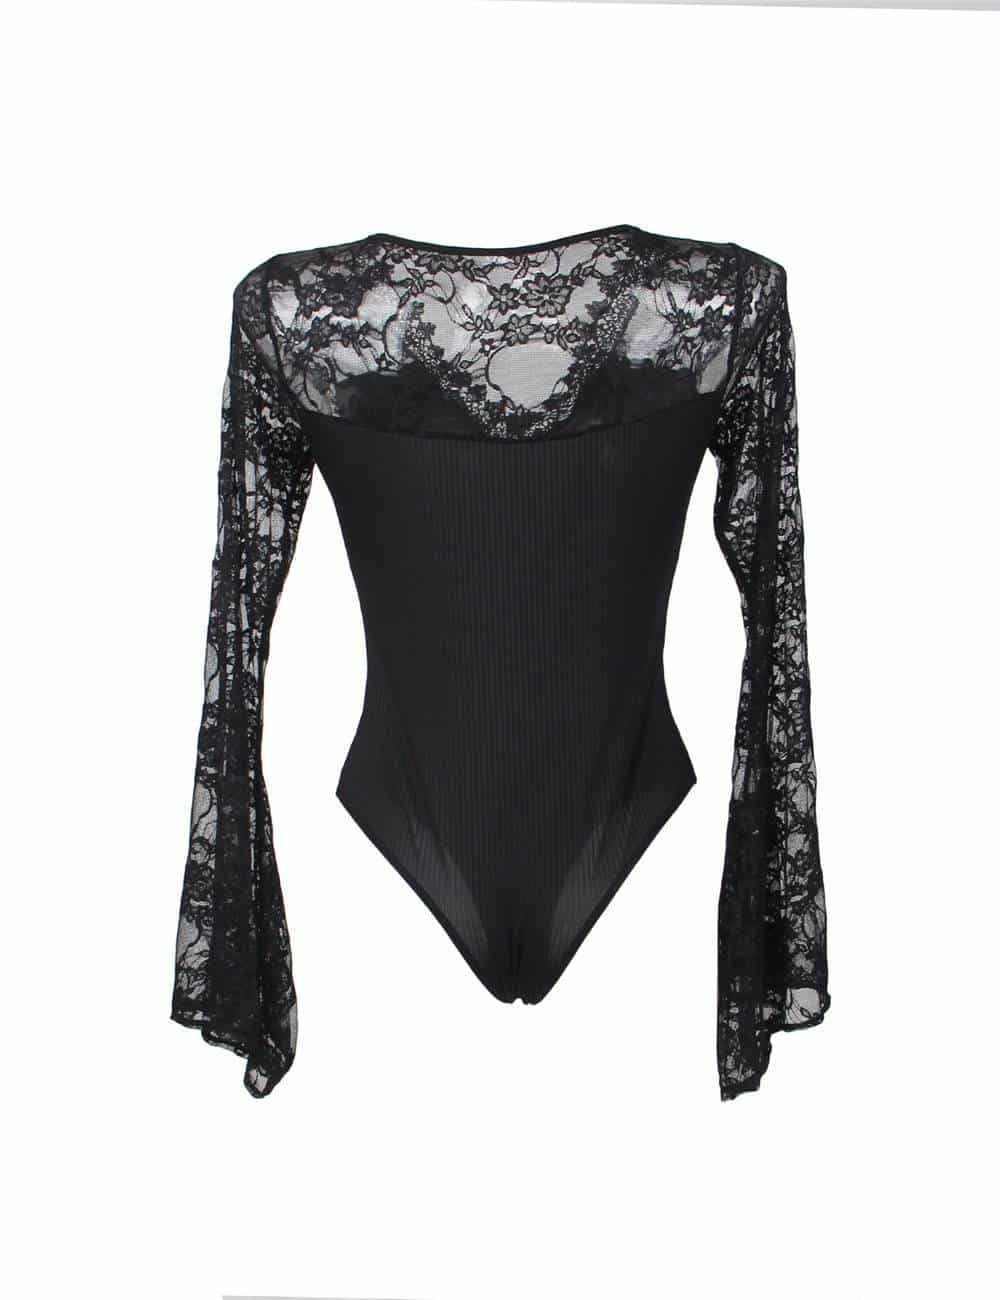 Black Lace Sleeve Teddy| Bodysuit| Lingerie| Plus Size